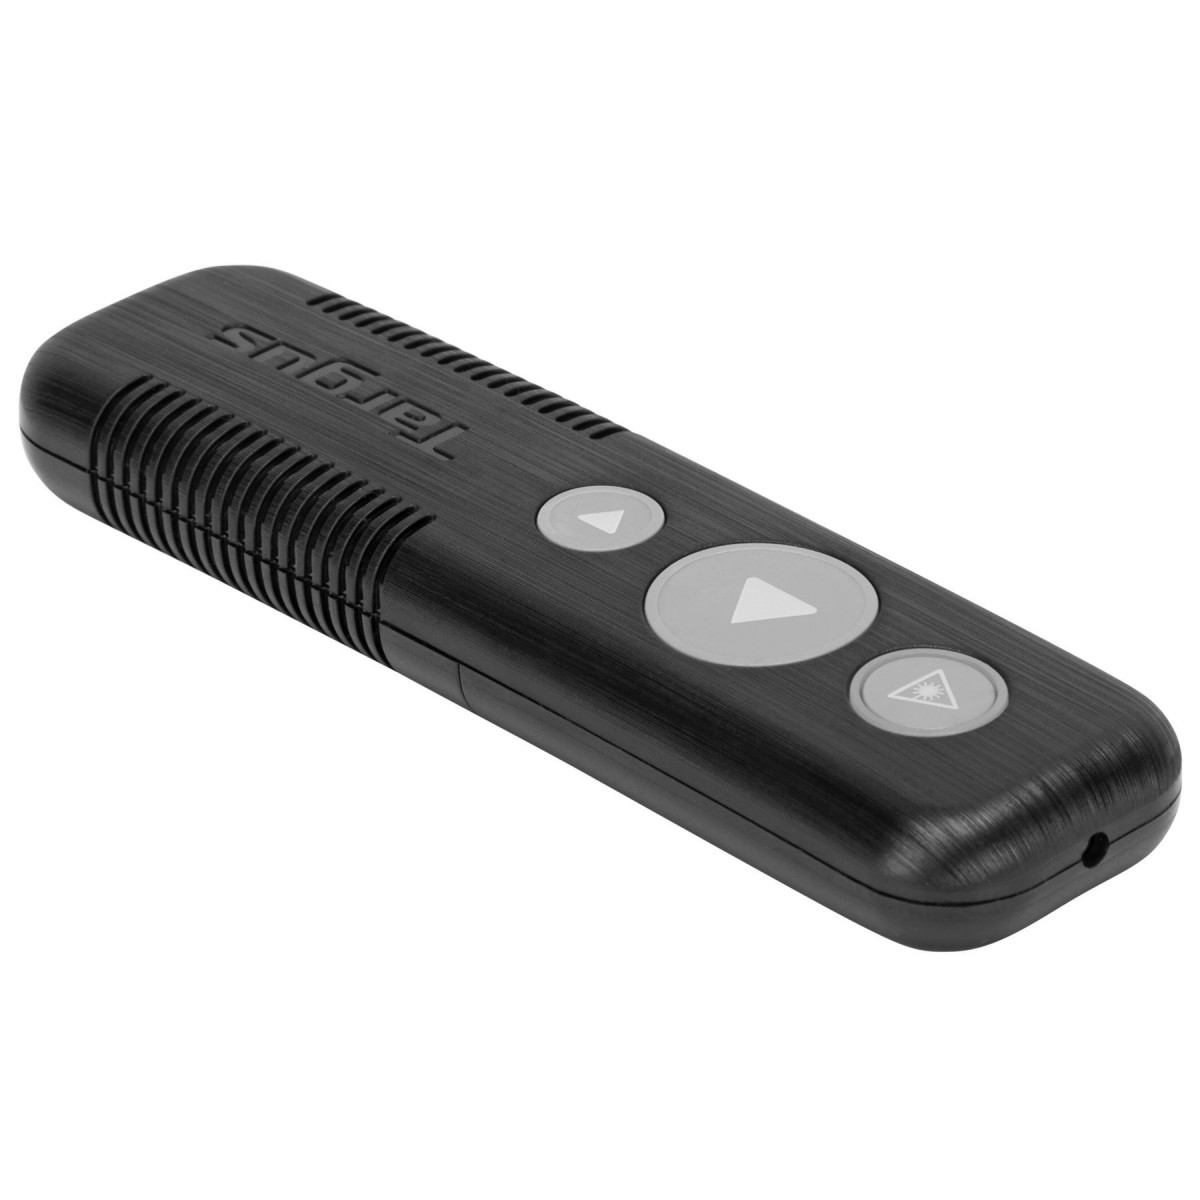 0051360_wireless-usb-presenter-with-laser-pointer-black.jpg